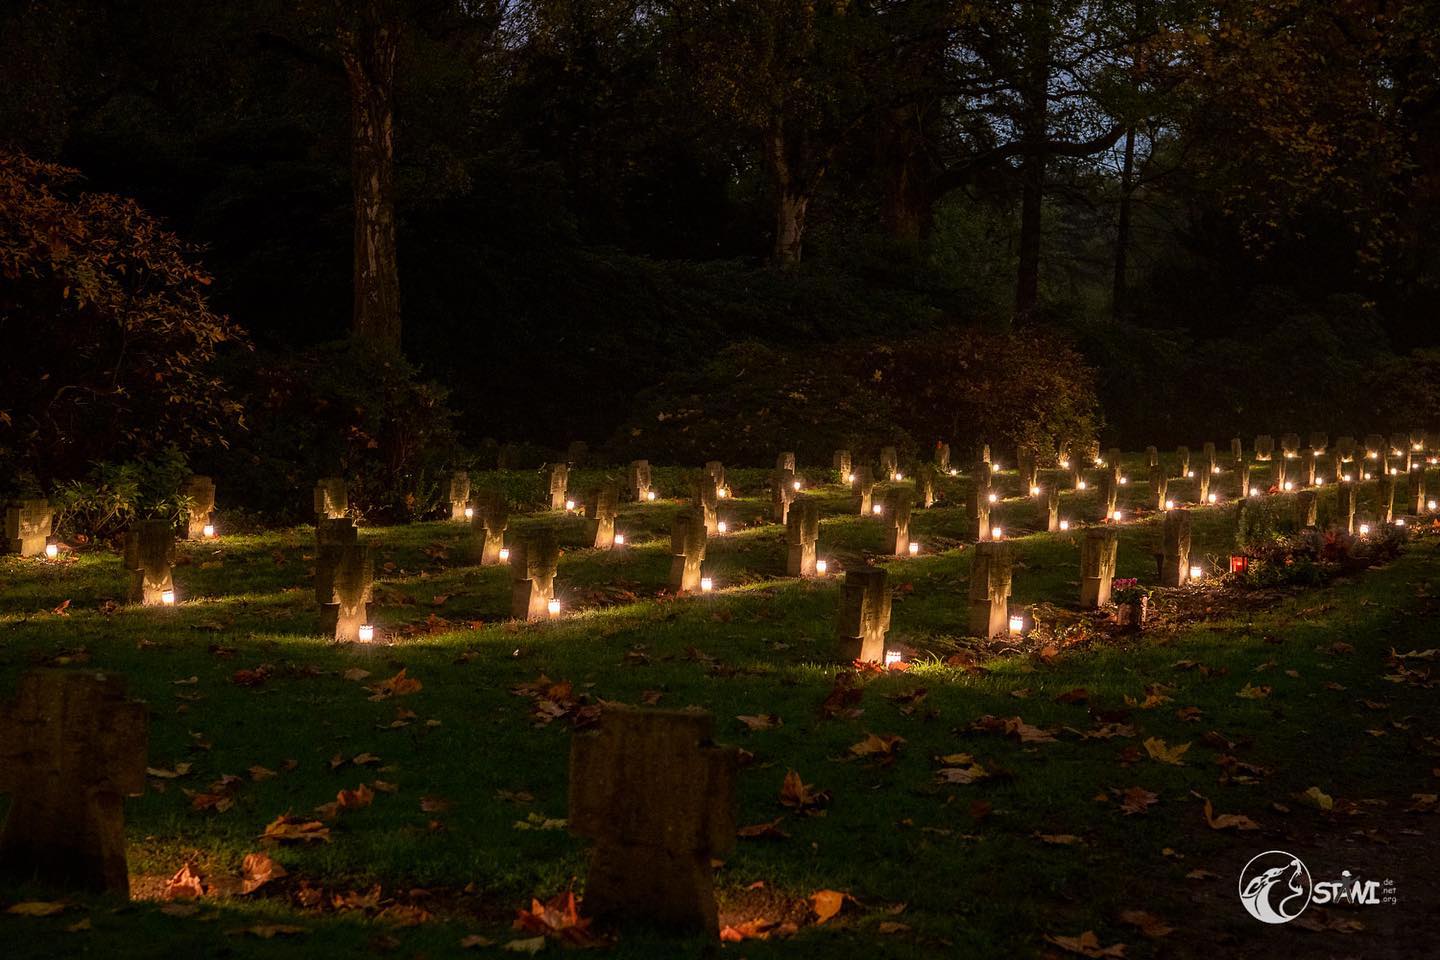 Illumina auf den Hauptfriedhof